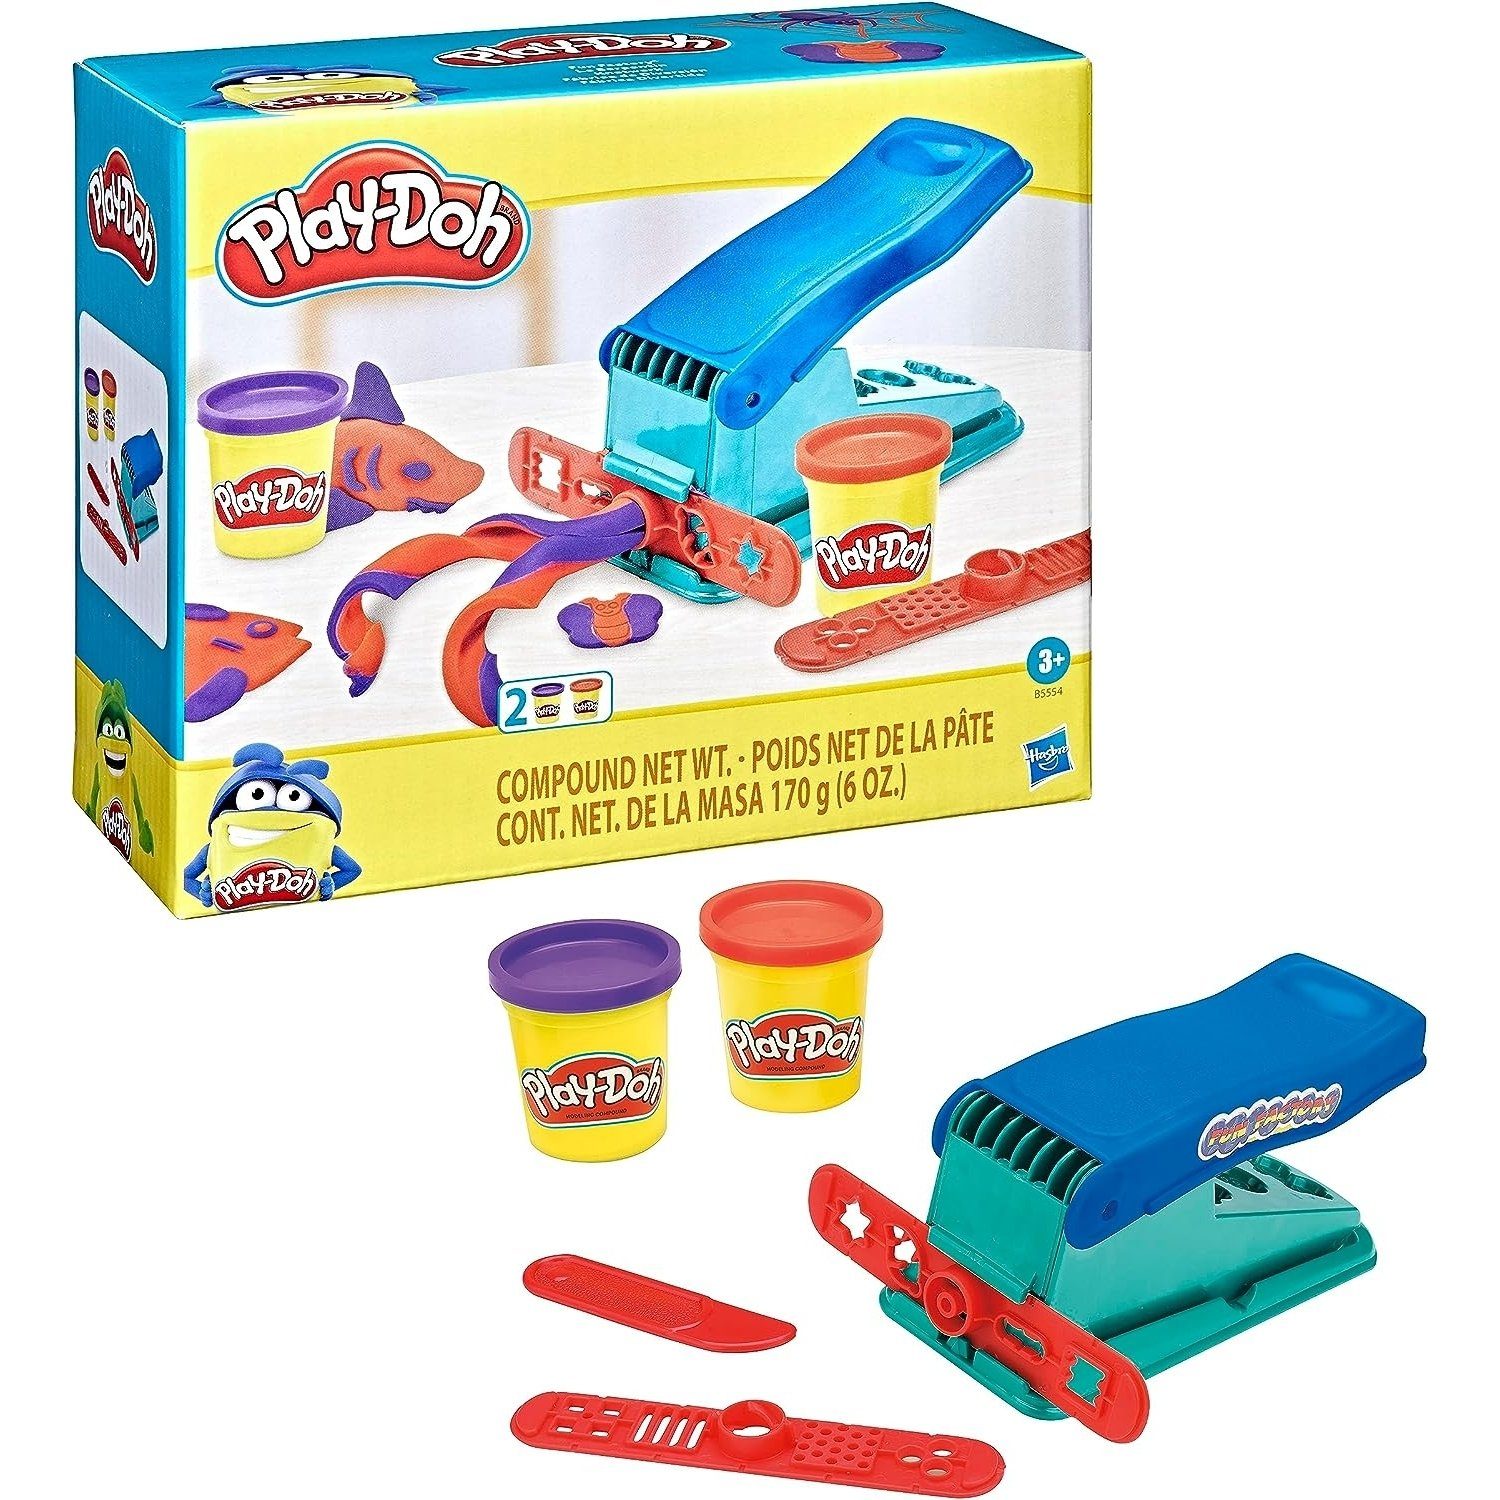 Hasbro Knetform-Set Play-Doh B5554 Knetwerkpresse inkl. 2 Dosen Play-Doh, für fantasievolles (Spar-Set)